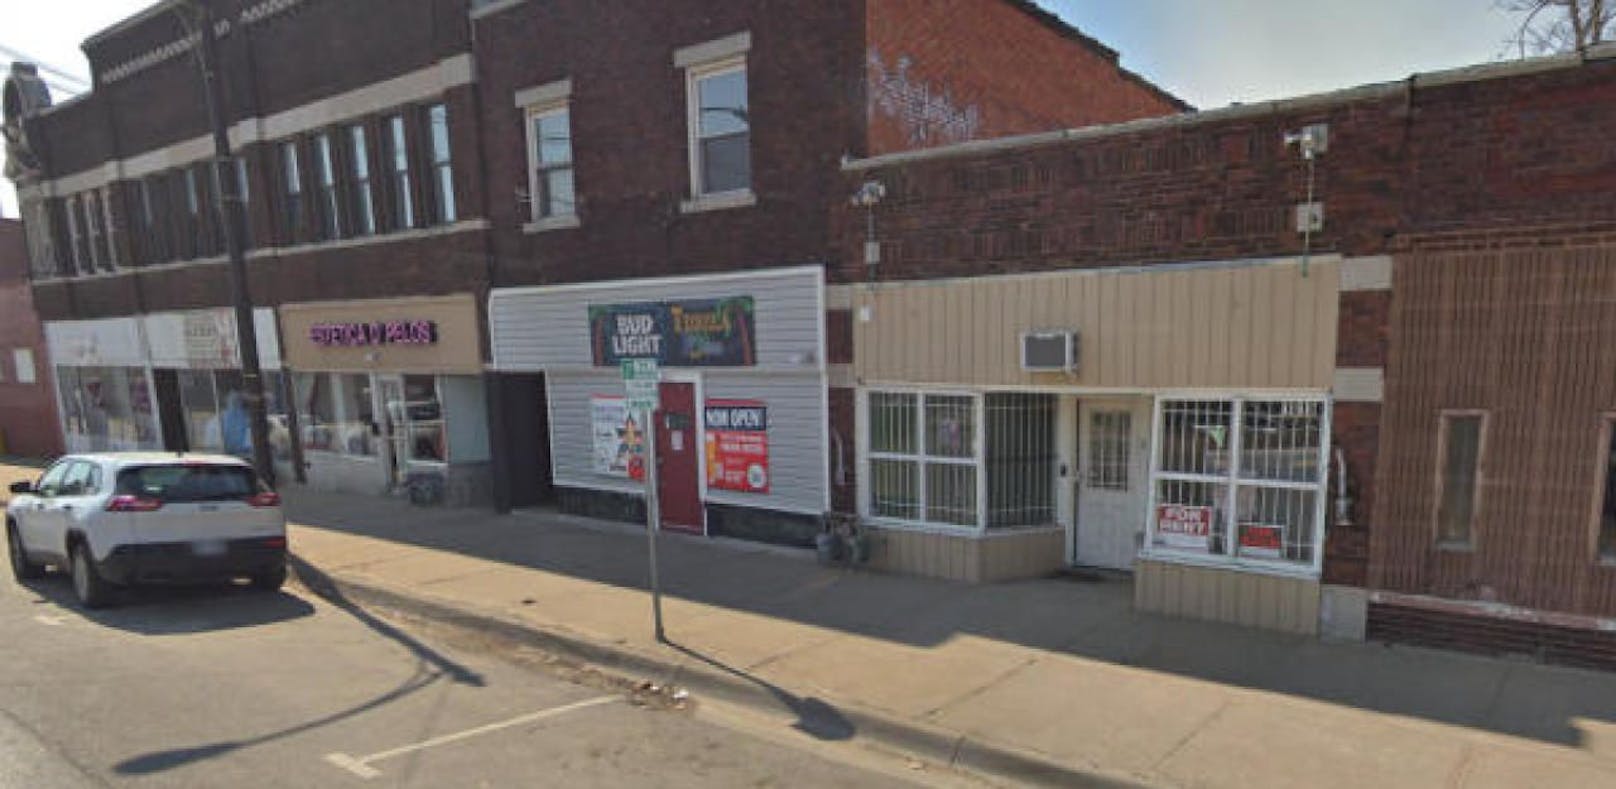 In einer Bar in Kansas City hat ein Mann am frühen Sonntagmorgen um sich geschossen.
